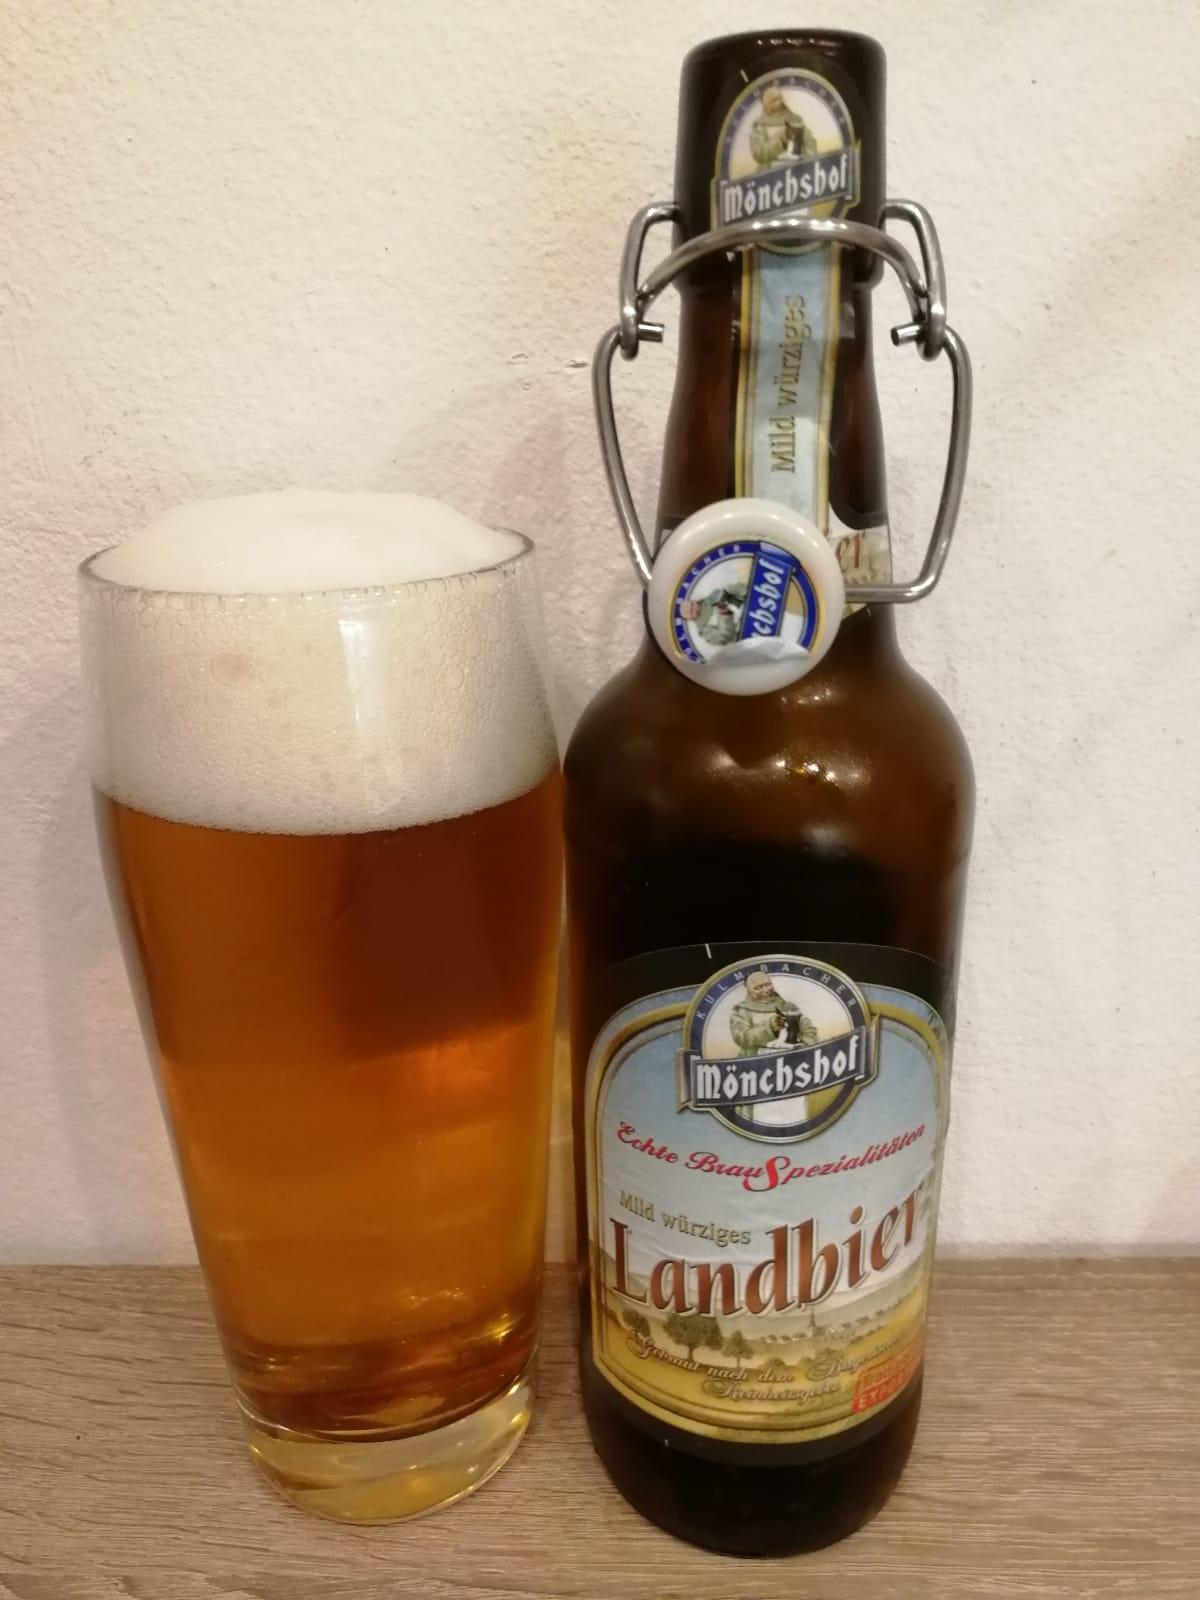 Mönchshof Landbier